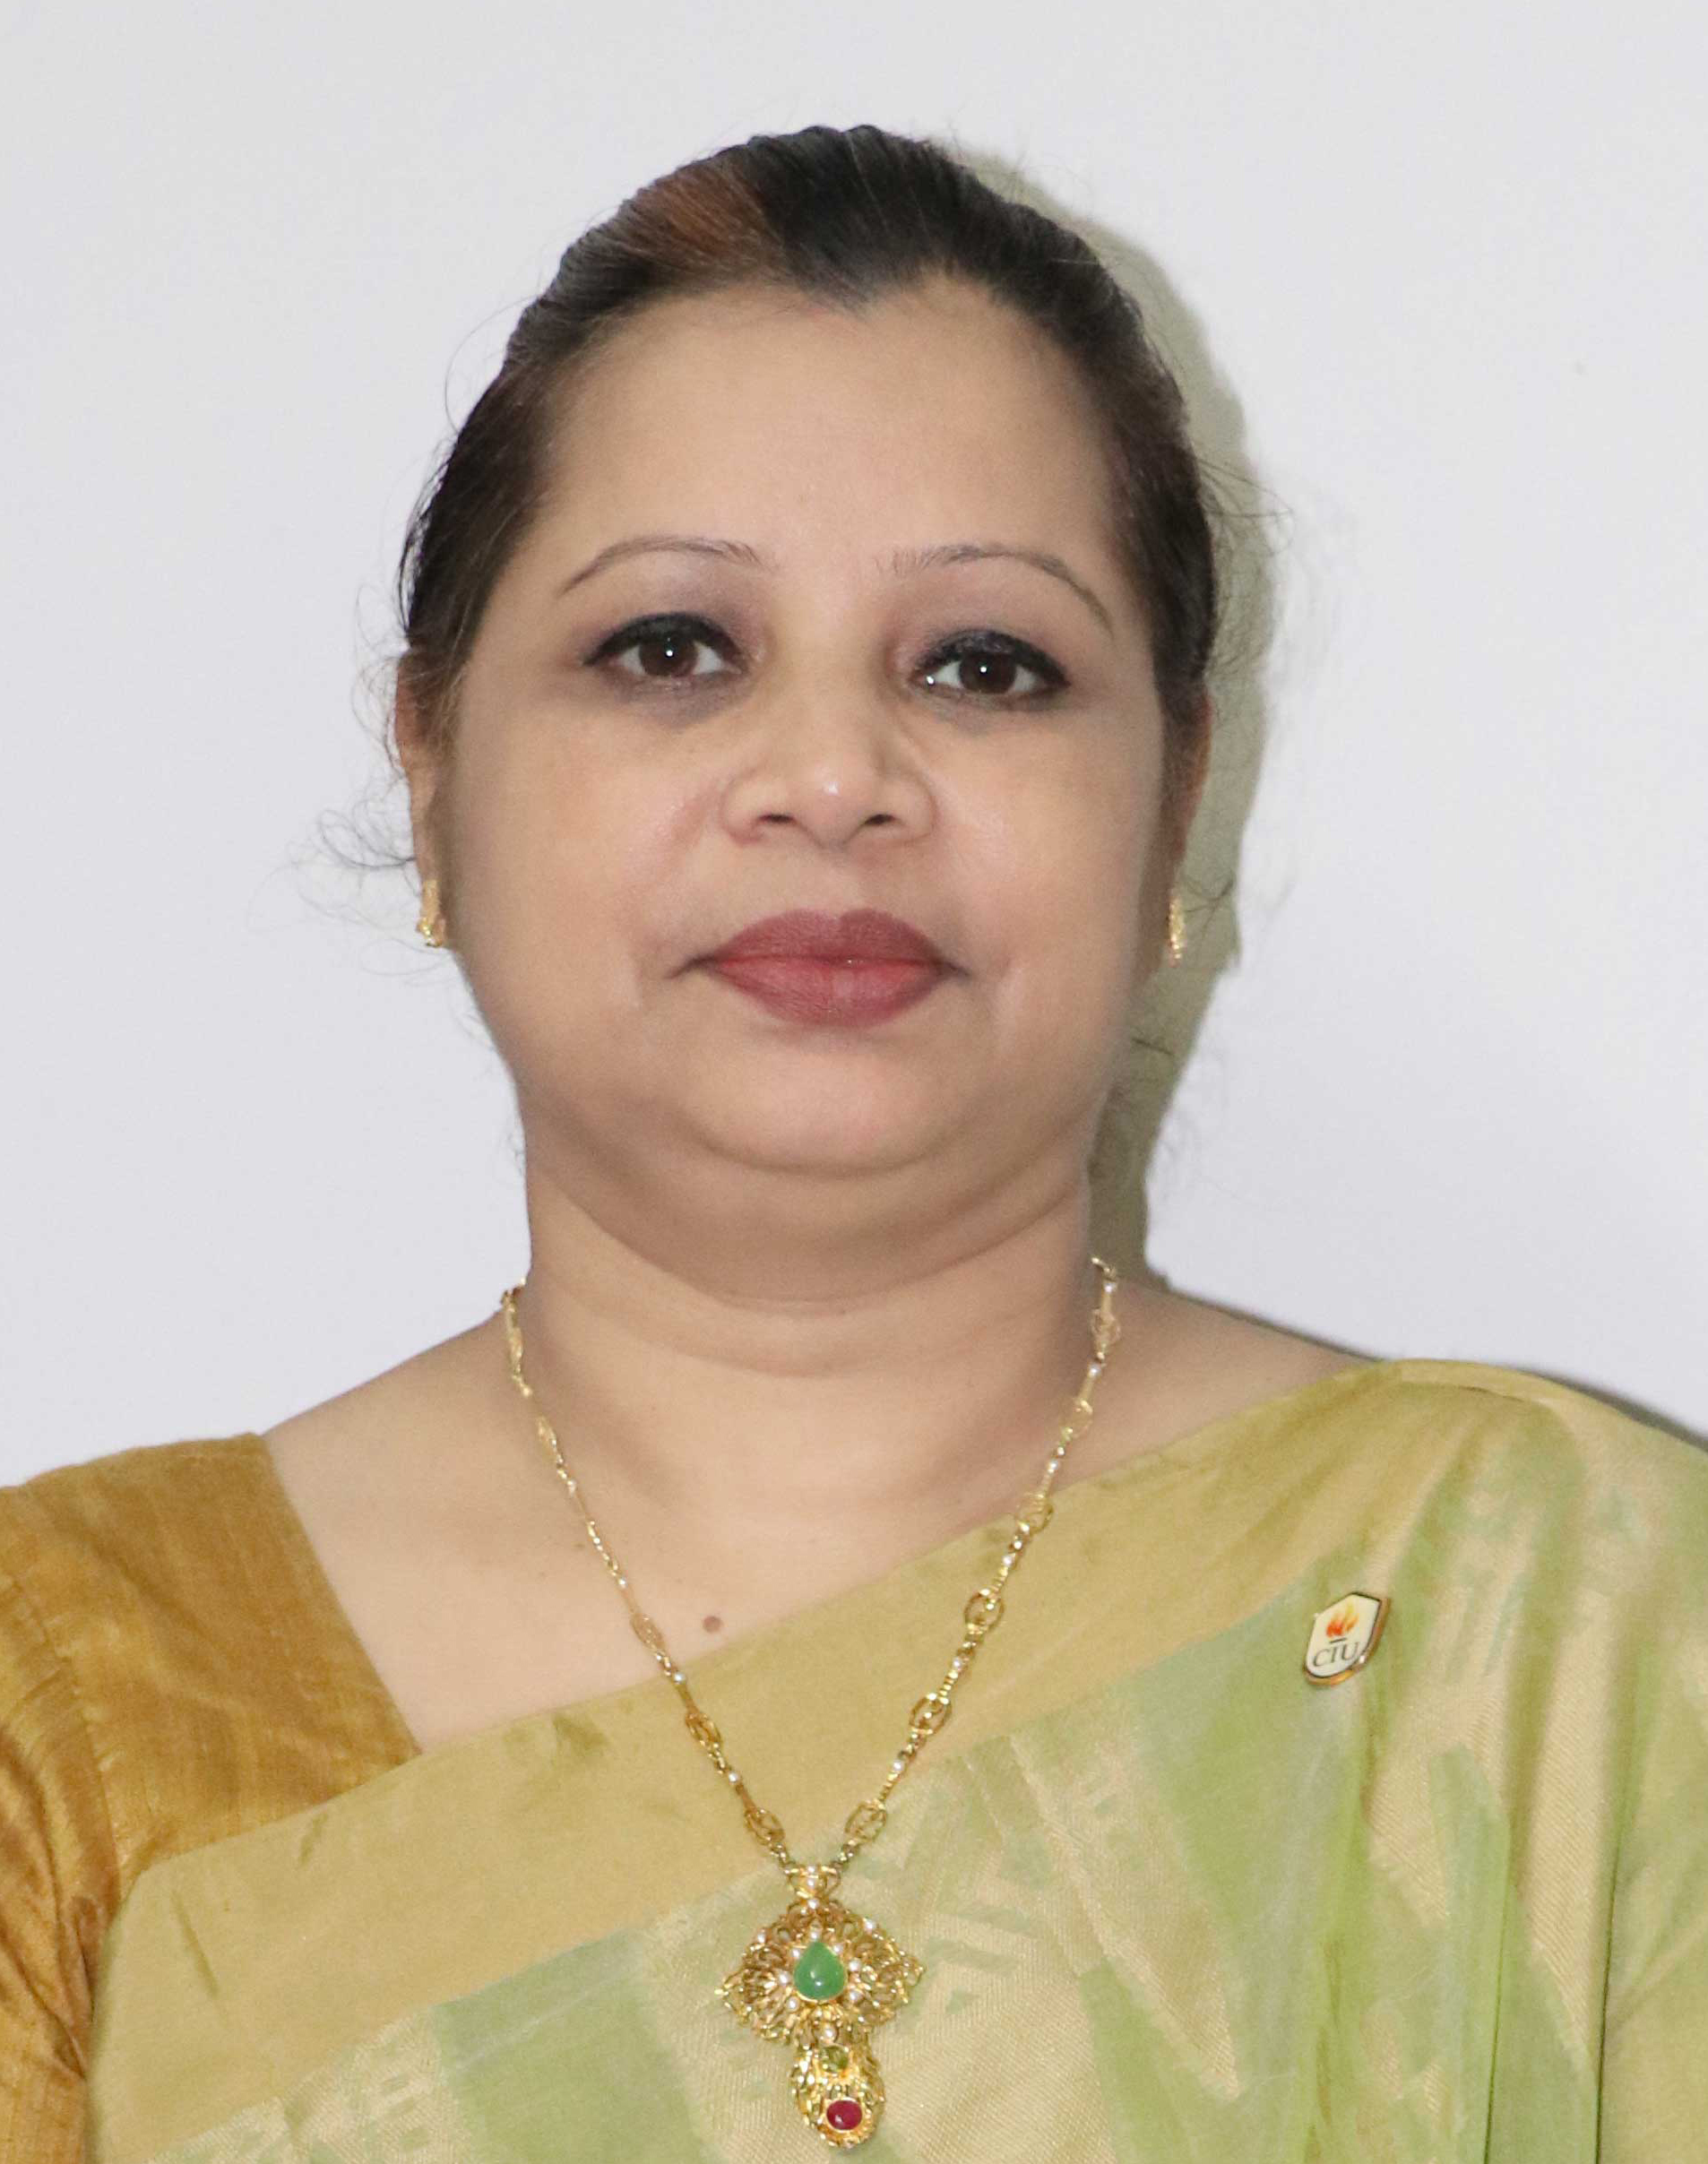 Ms. AnjumanBanu Lima